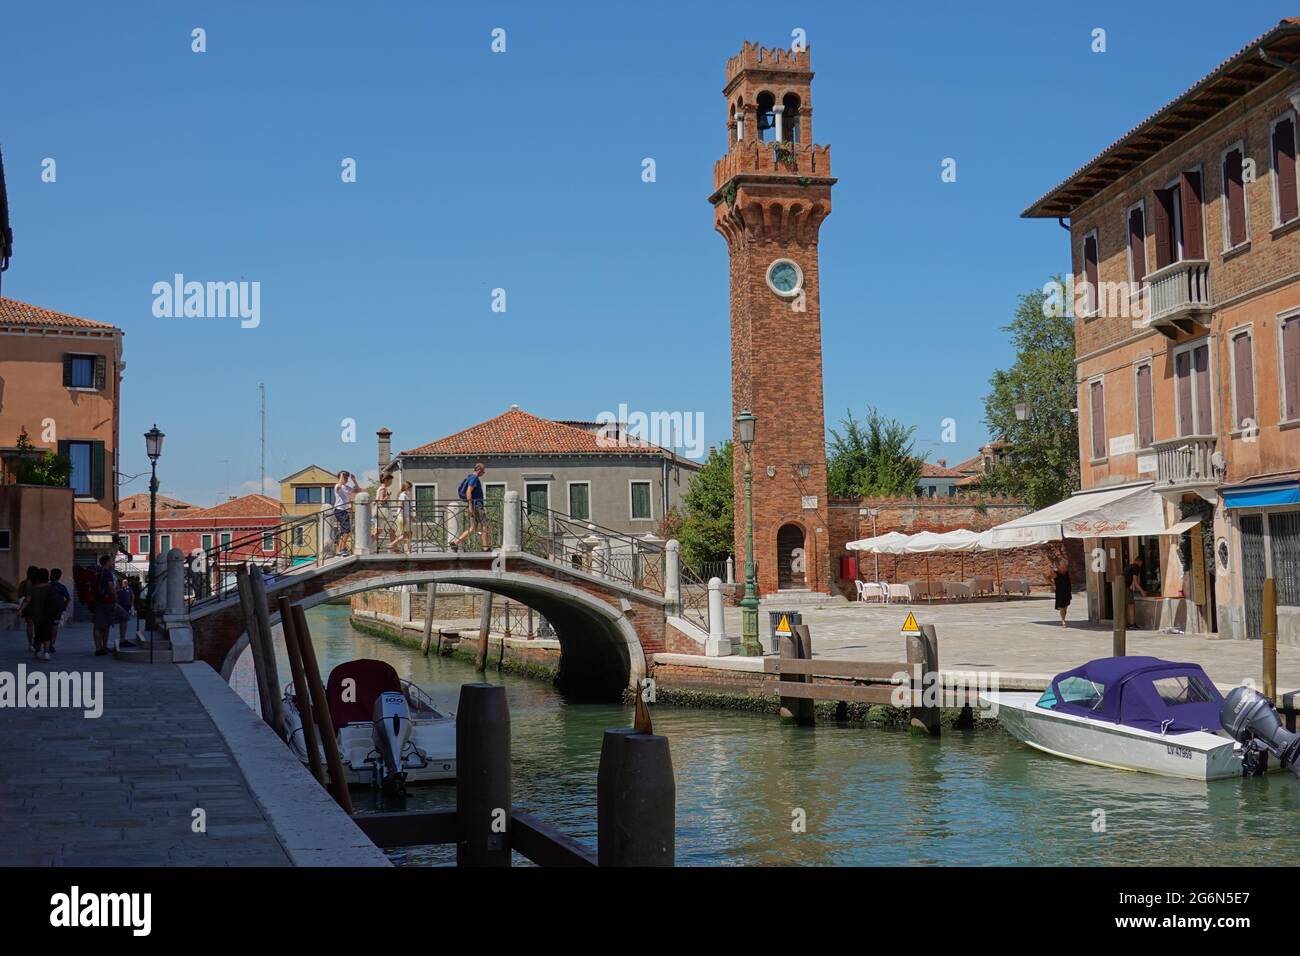 Murano, venetisch Muran, ist eine Inselgruppe nordöstlich der Altstadt von Venedig in der Lagune von Venedig. Sie ist bekannt für ihre Glaskunst, lebt Stock Photo